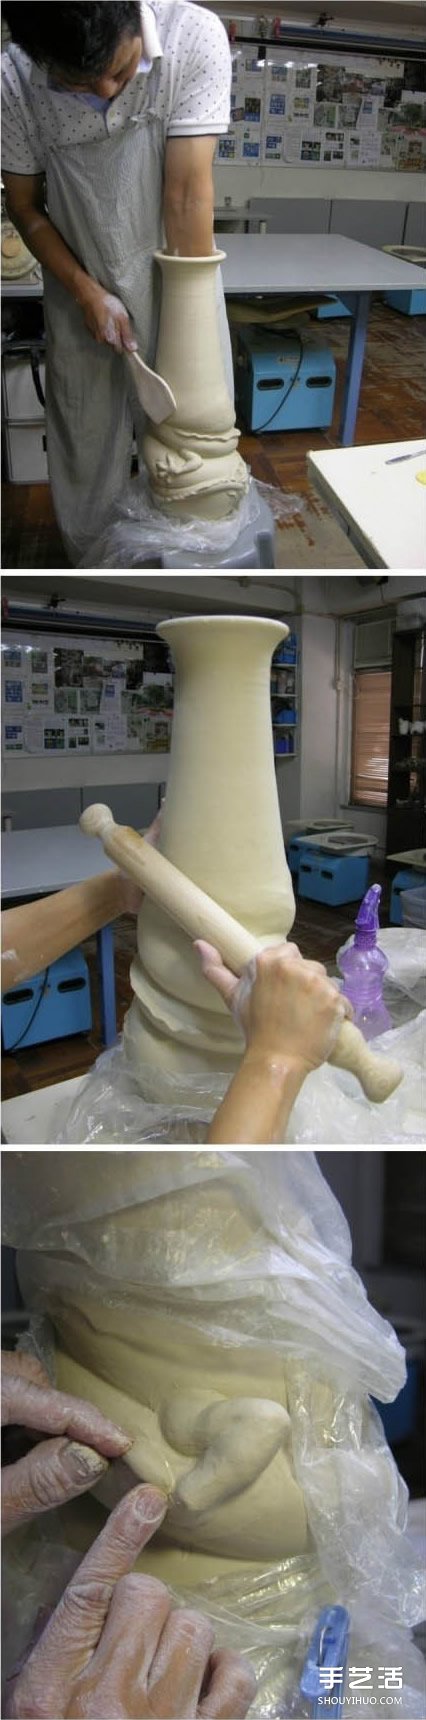 龙形陶瓷瓶DIY制作过程 中国龙盘旋陶瓷瓶制作